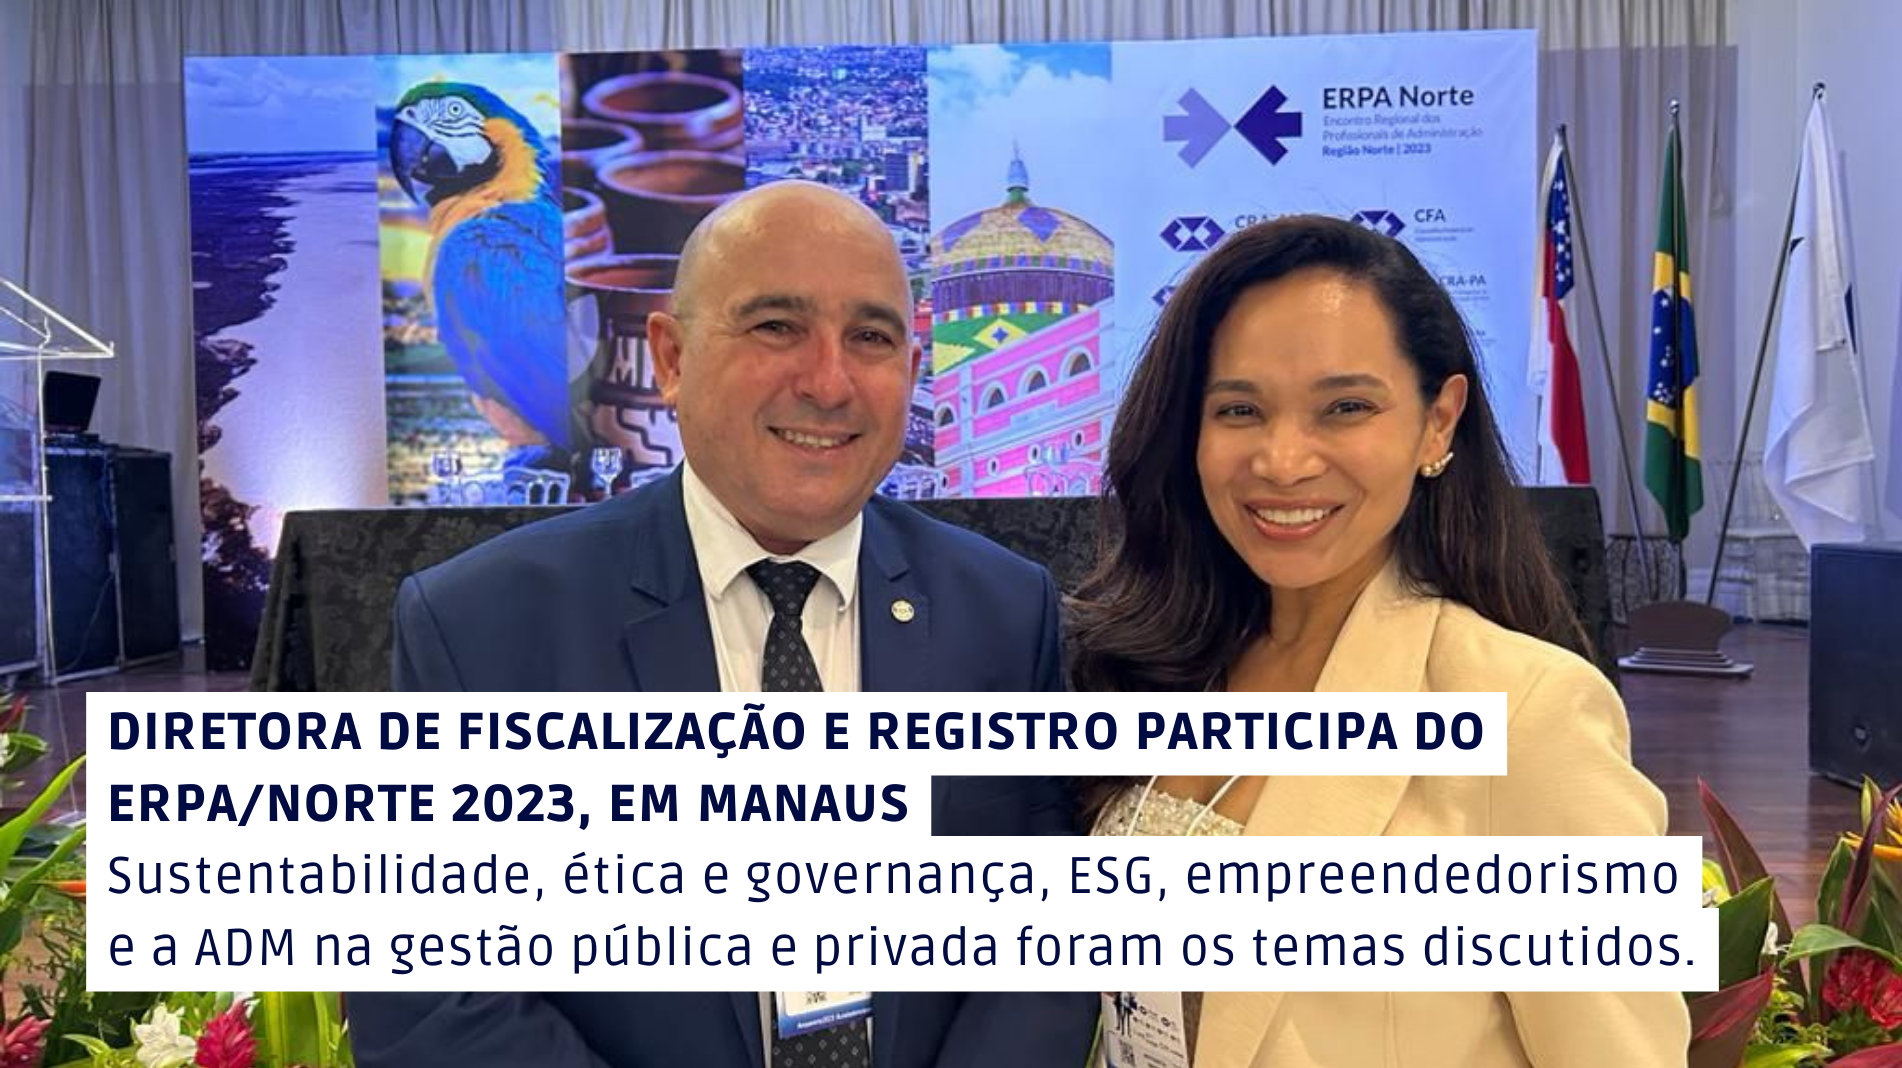 You are currently viewing Diretora de Fiscalização e Registro participa do Encontro Regional dos Profissionais de Administração ERPA/NORTE 2023, em Manaus-AM